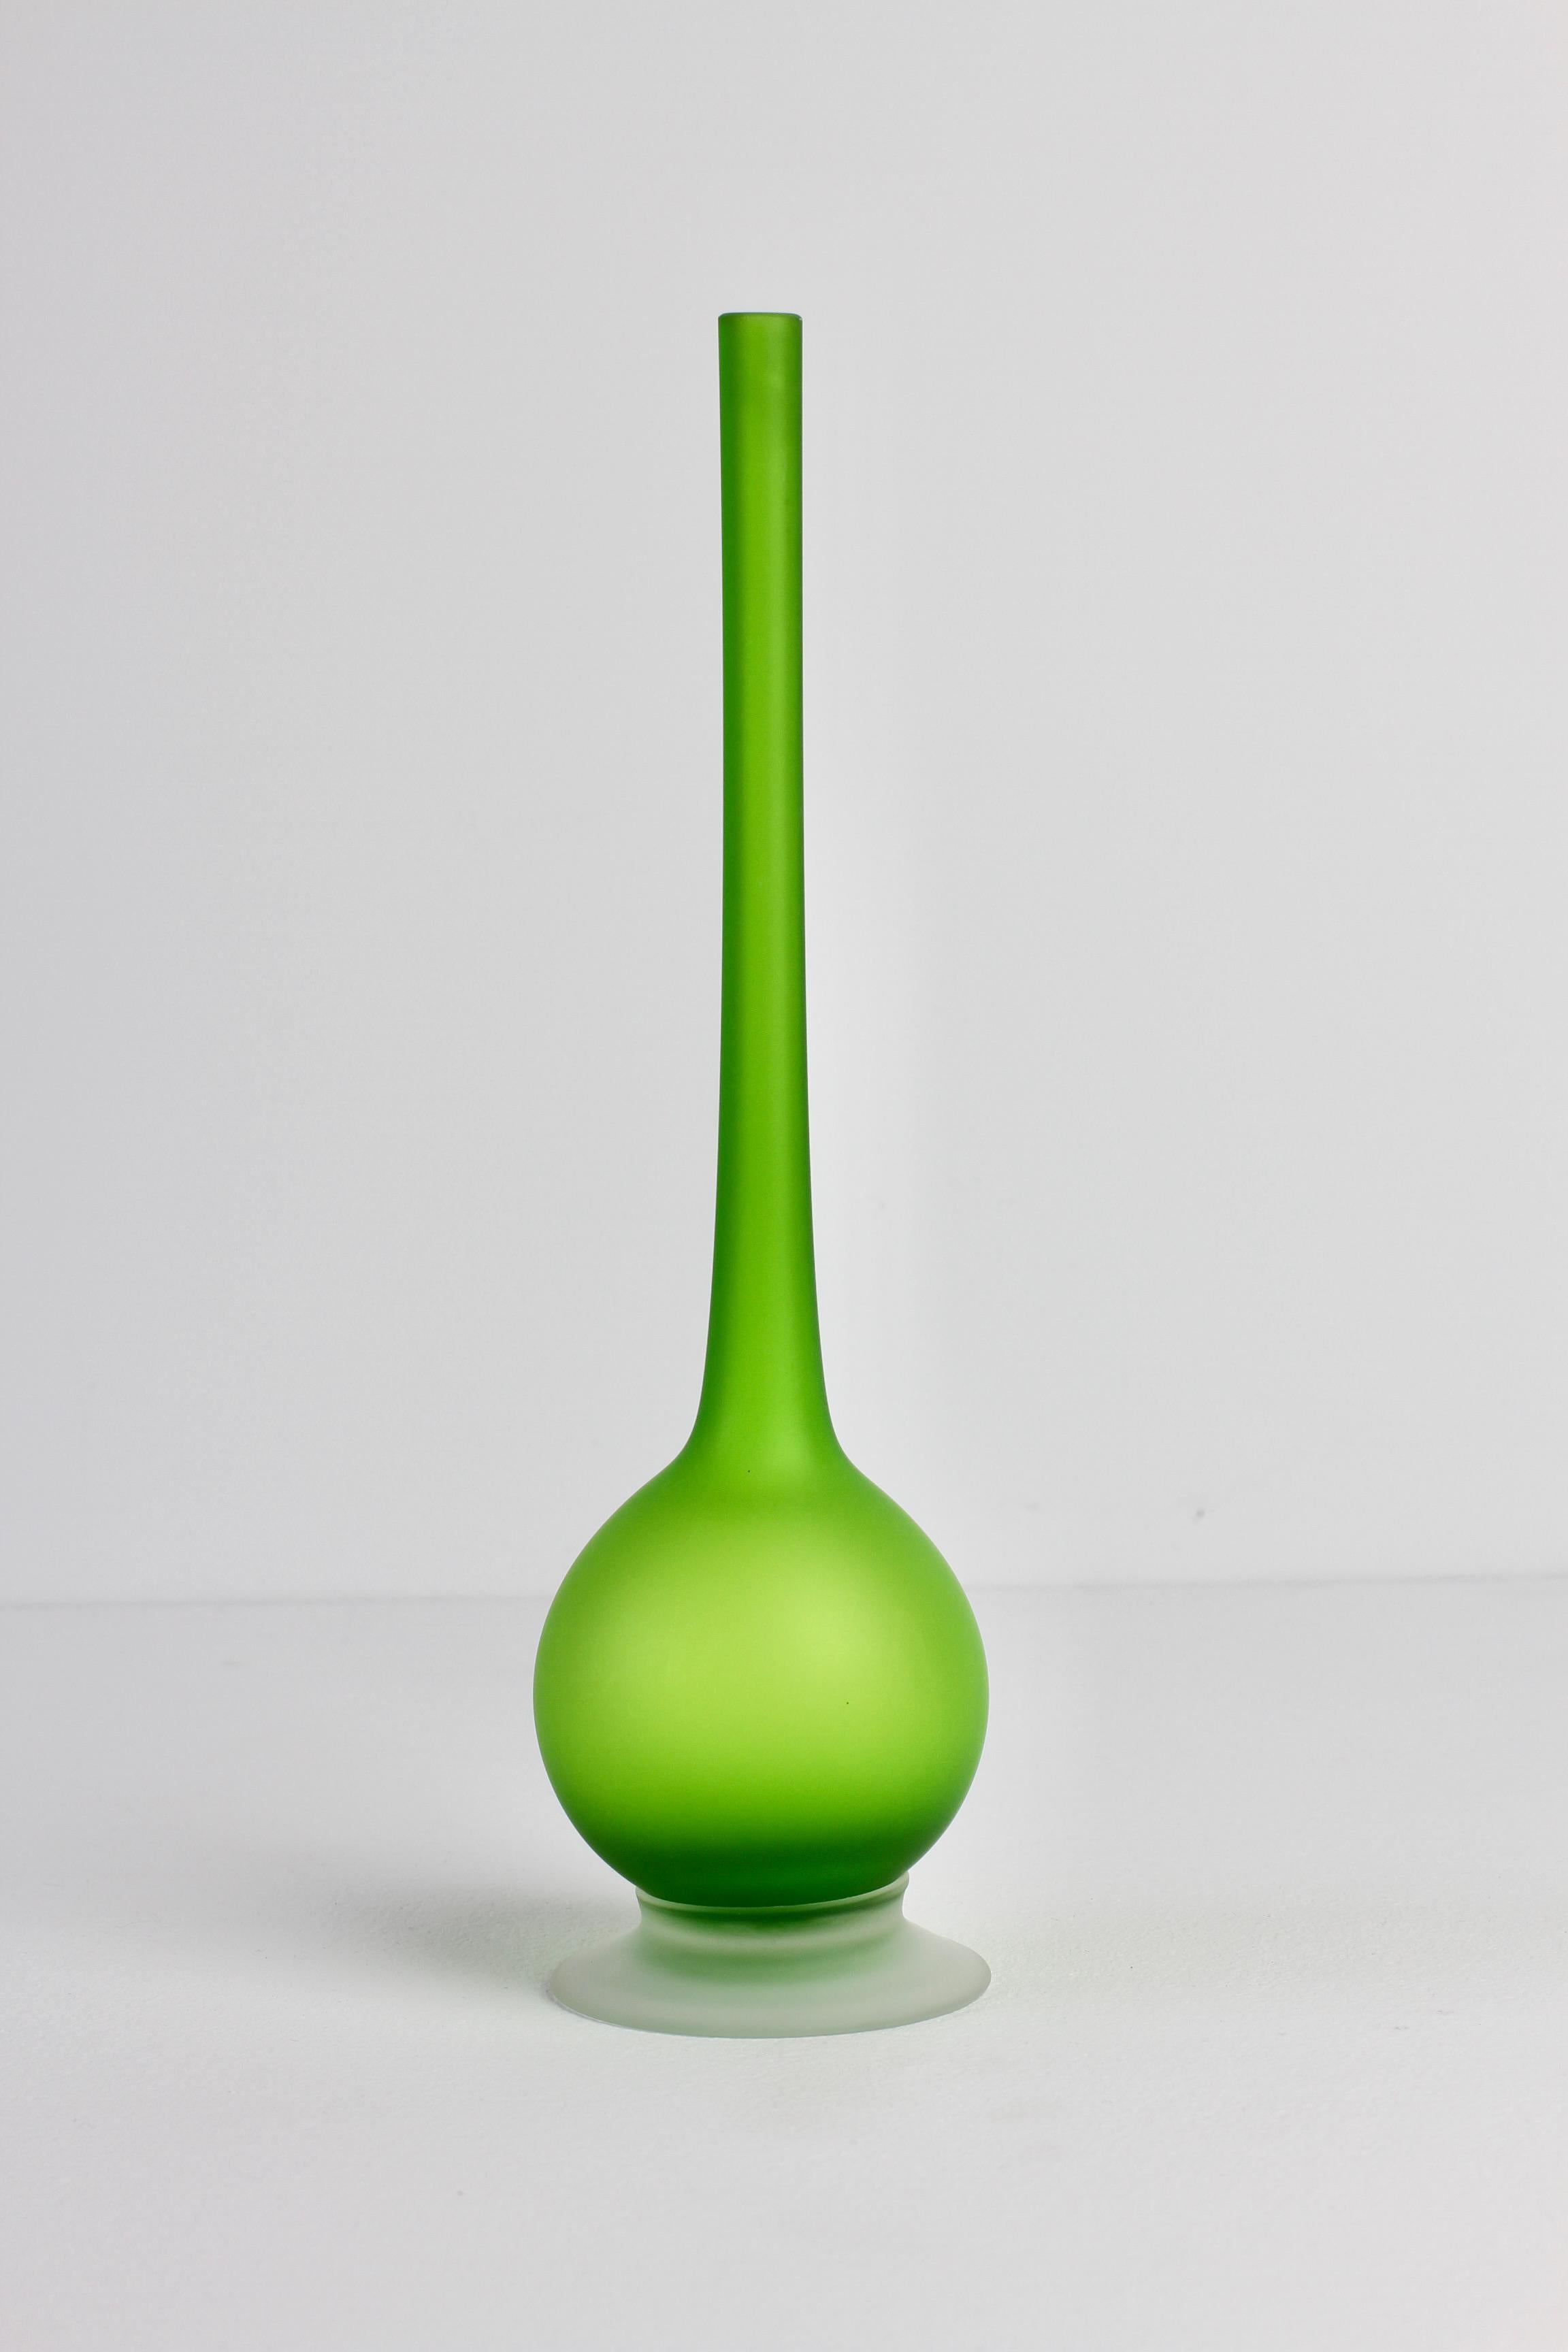 Mid-Century Modern lebendige Jellybean grün gefärbt / farbig satiniert Murano Glas Bleistift Hals Vasen von Carlo Moretti (1934-2008), um 1970.

Ein absolut kühnes und doch elegantes Design mit der Verwendung von leuchtendem, lebhaftem Grün in